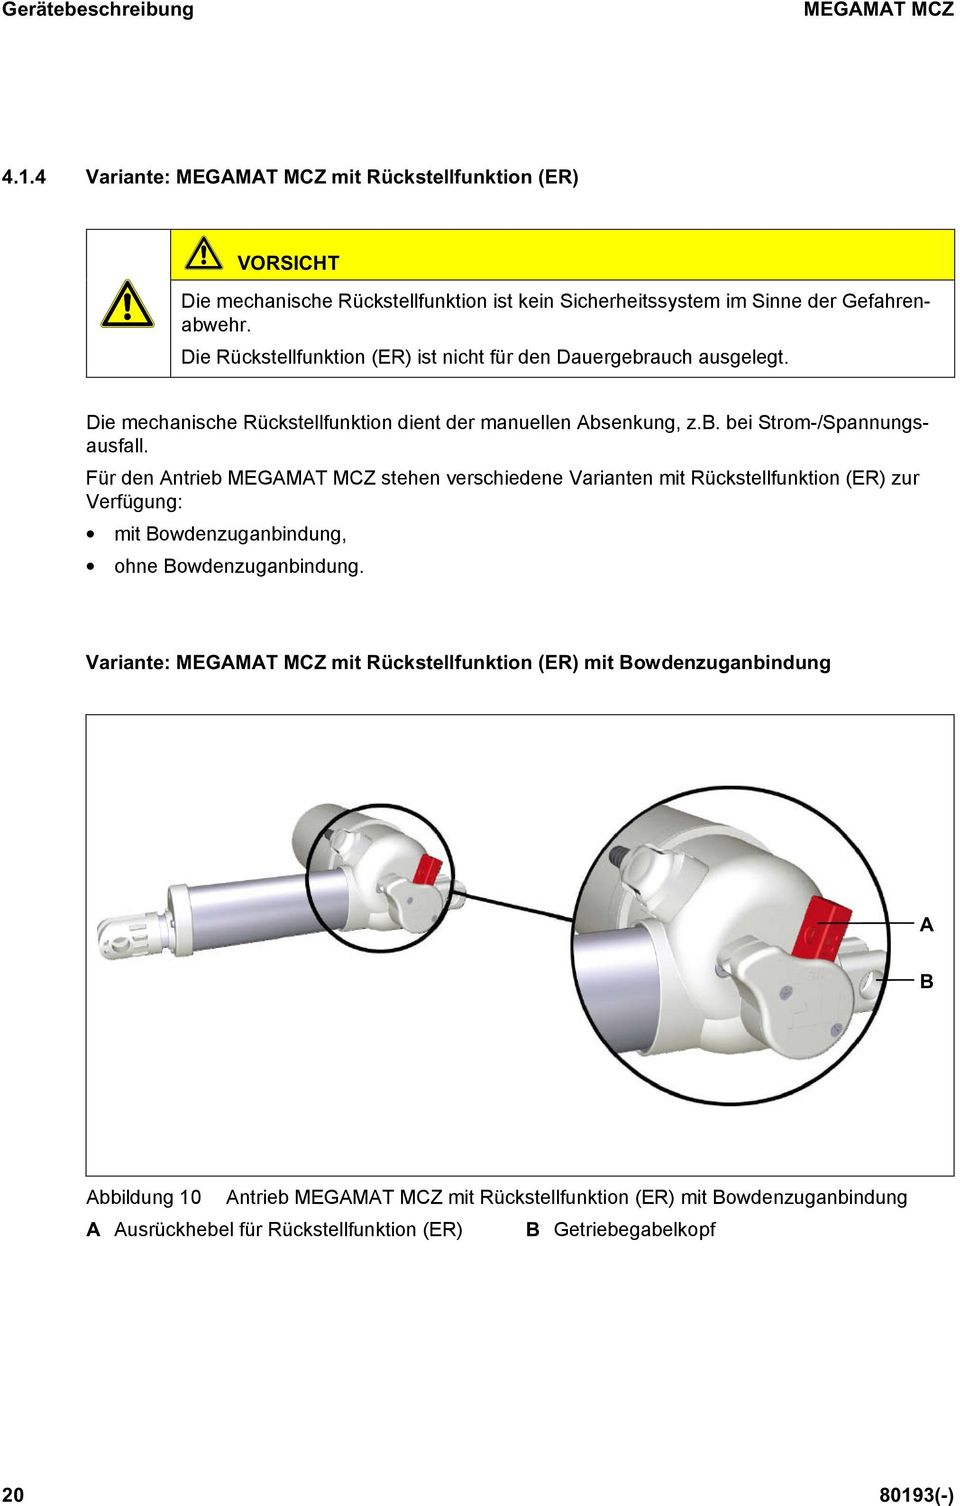 Für den Antrieb MEGAMAT MCZ stehen verschiedene Varianten mit Rückstellfunktion (ER) zur Verfügung: mit Bowdenzuganbindung, ohne Bowdenzuganbindung.